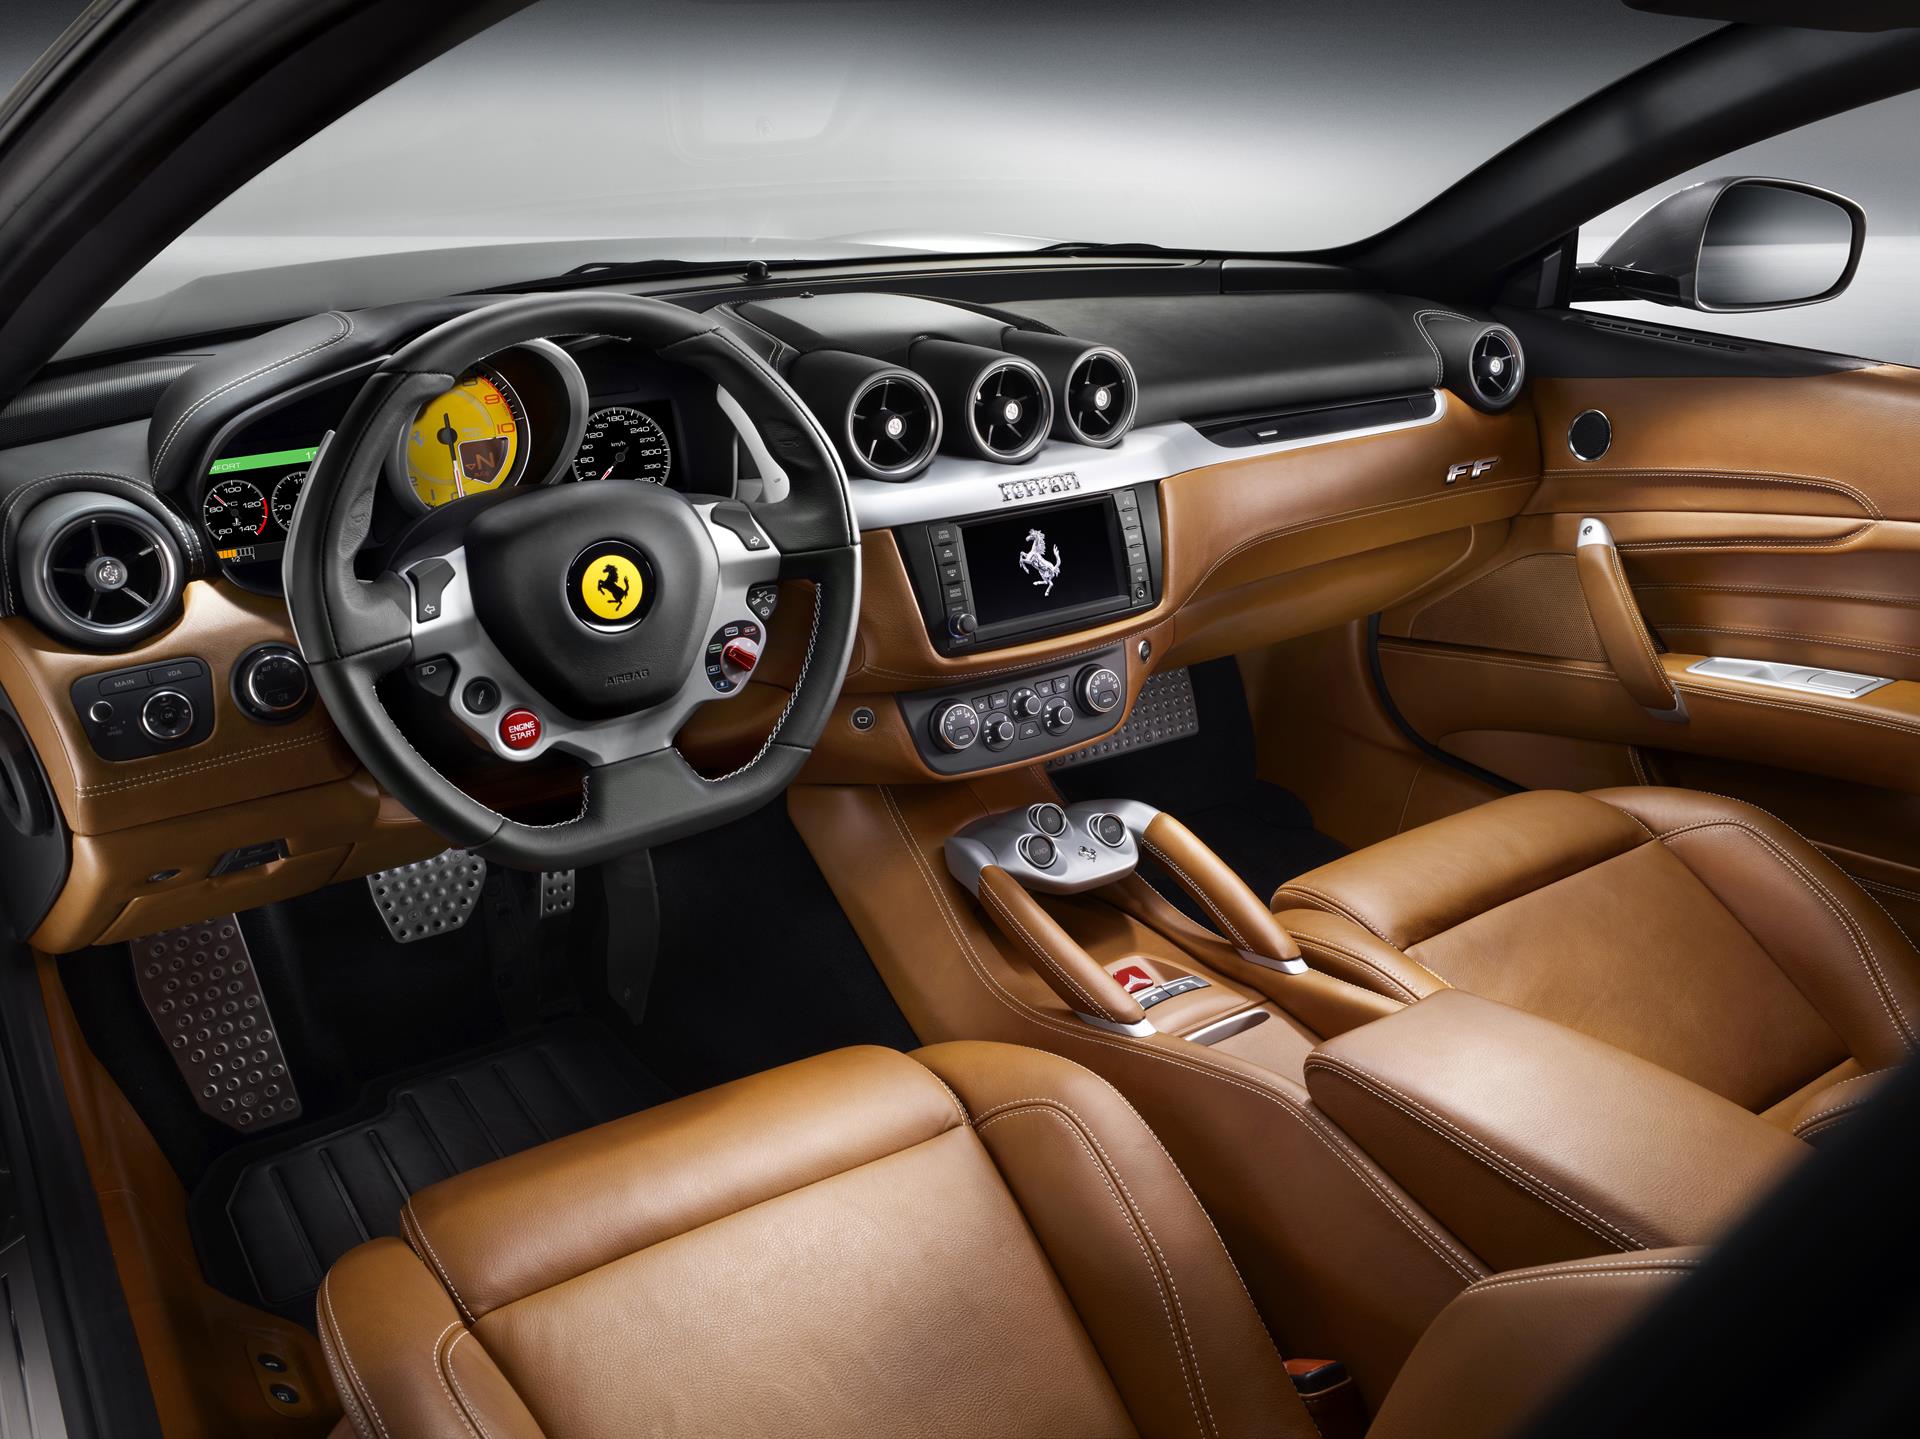 2016 Ferrari FF